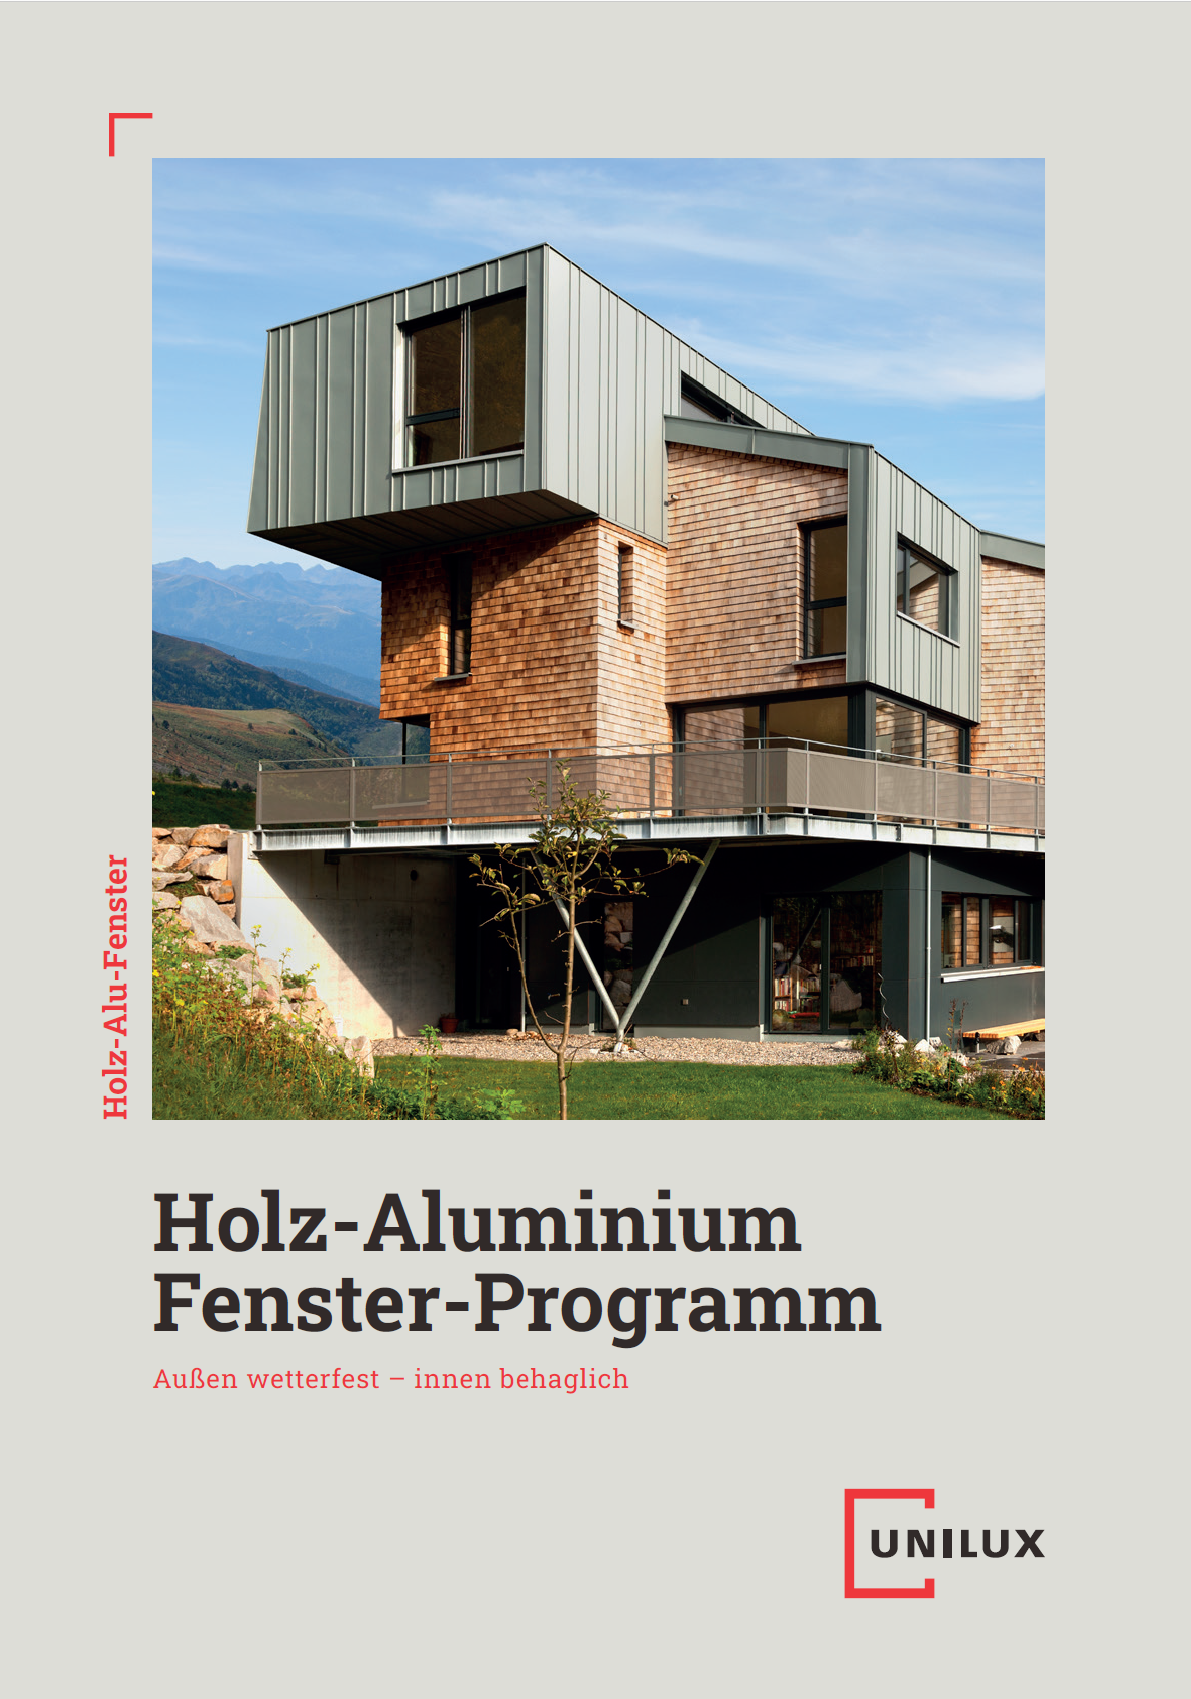 UNILUX_Katalog für Holz-Aluminium-Fenster zum Download bei Rolladen Kessler Saarbrücken.